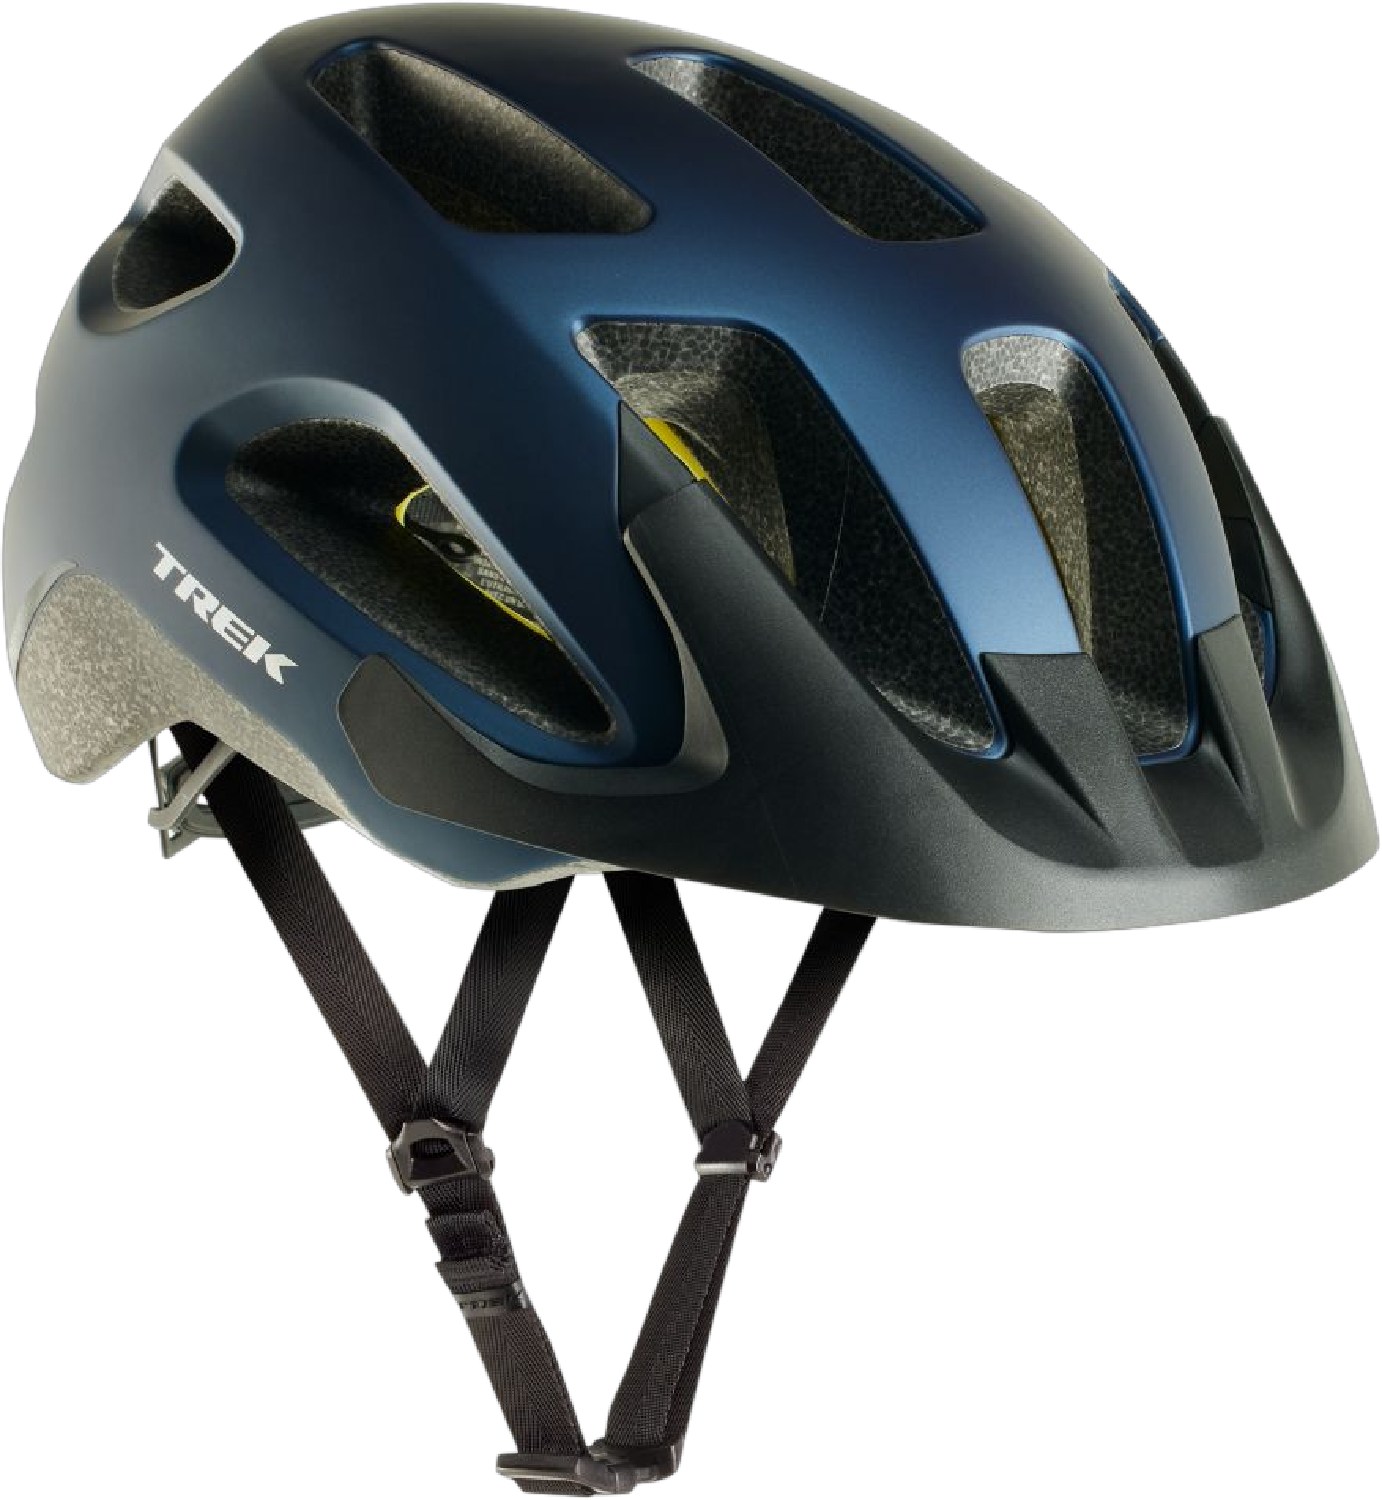 Велосипедный шлем Solstice Mips Trek, синий велосипедный задний переключатель передач 2 шт вешалка для трека 322175 trek elite trek zтеперь trek 7 2 fx wsd гэри фишера mendota mech dropout